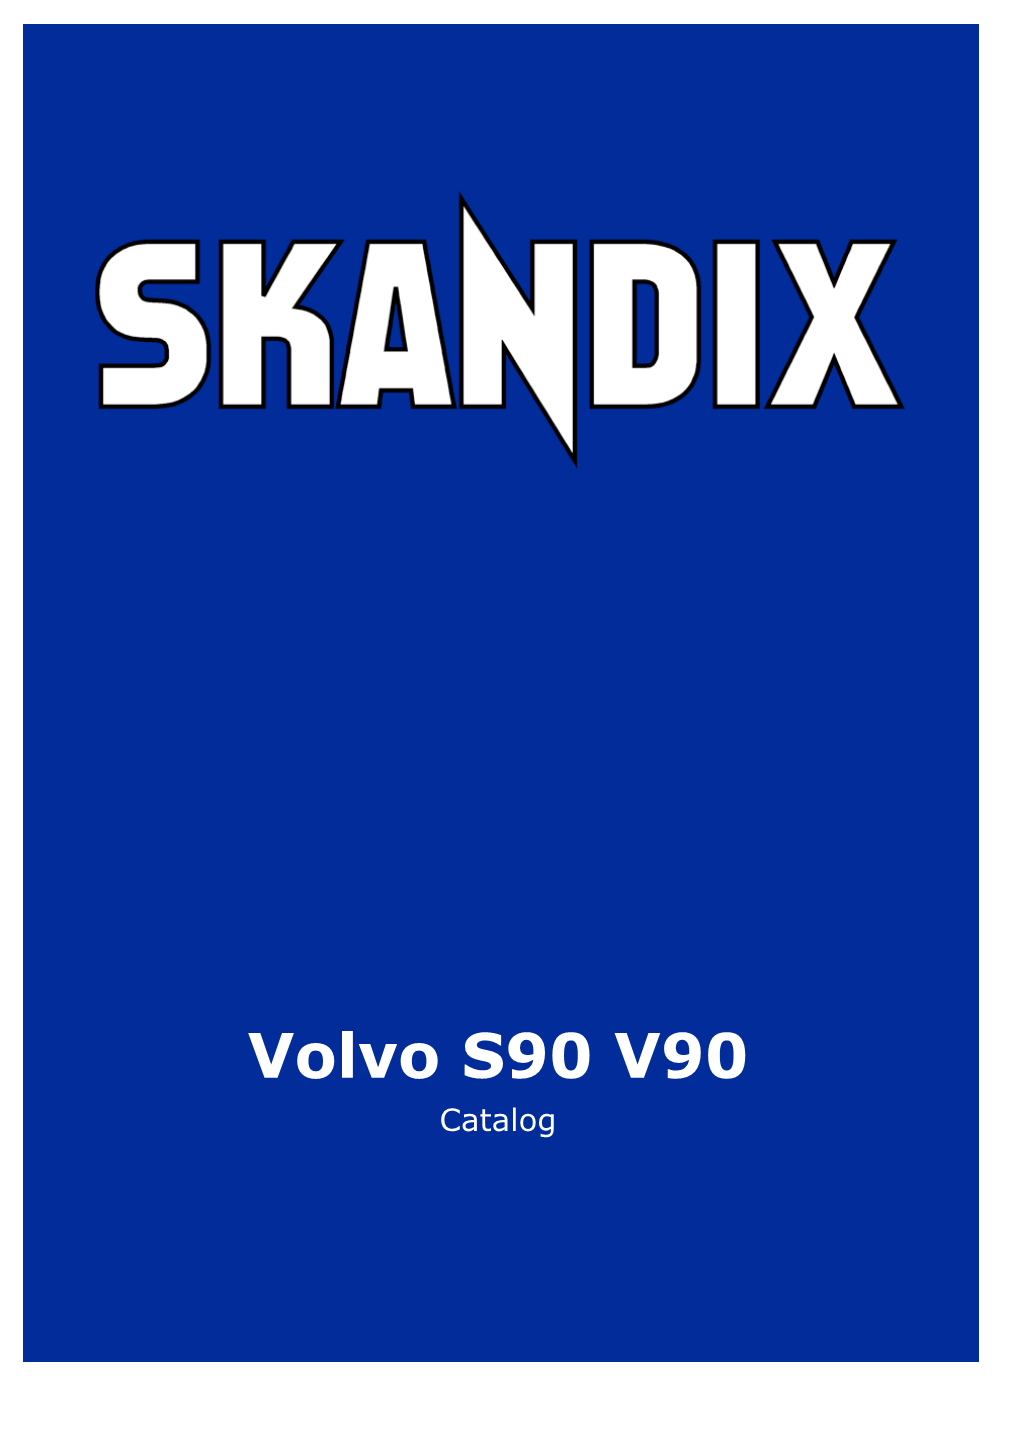 SKANDIX Catalog: Volvo S90